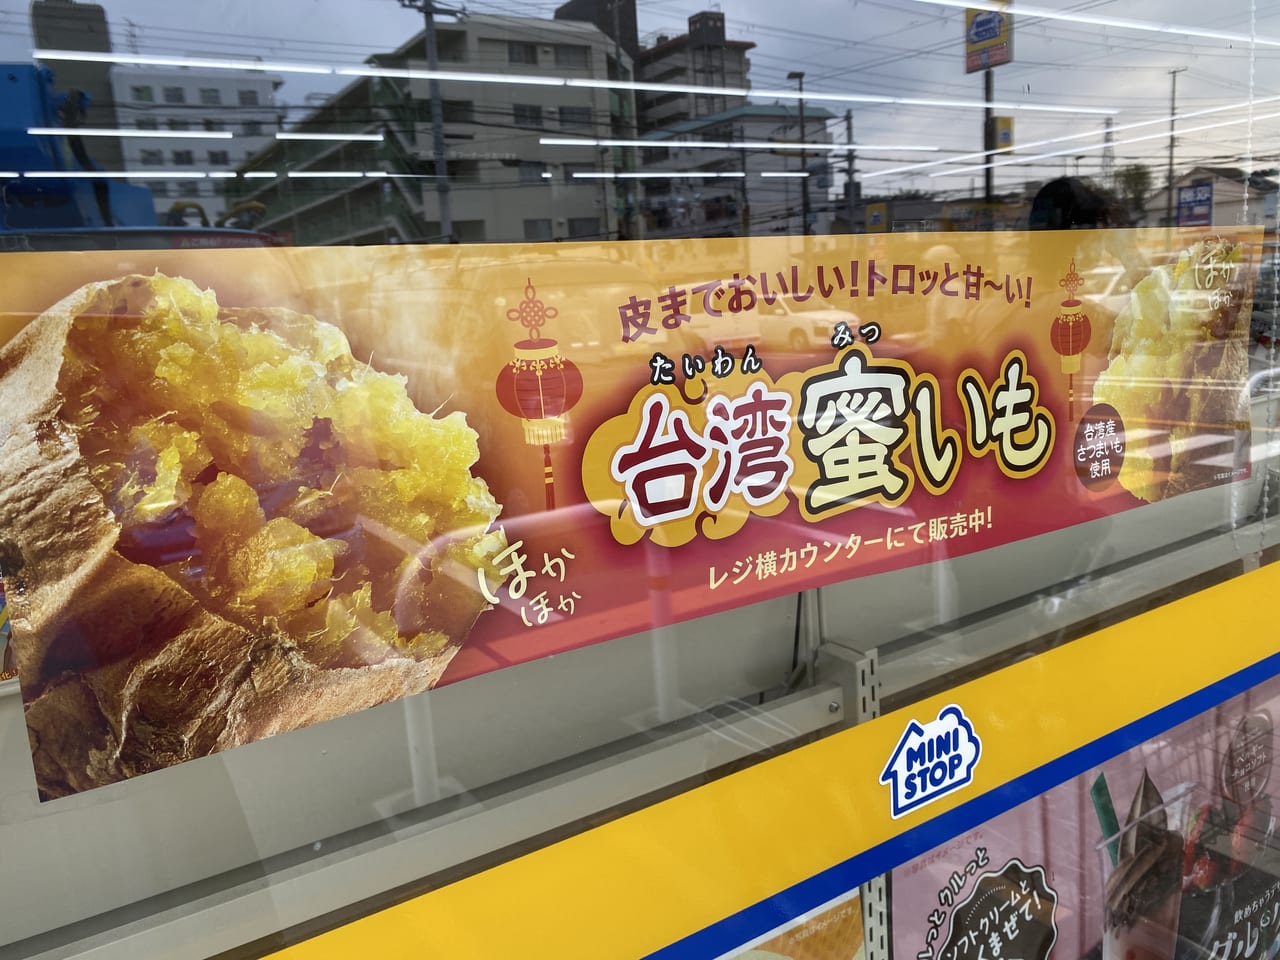 神戸市西区 ミニストップ新発売 甘くてトロトロ 台湾蜜いも はソフトクリームと一緒に食べてほしいです 号外net 神戸市西区